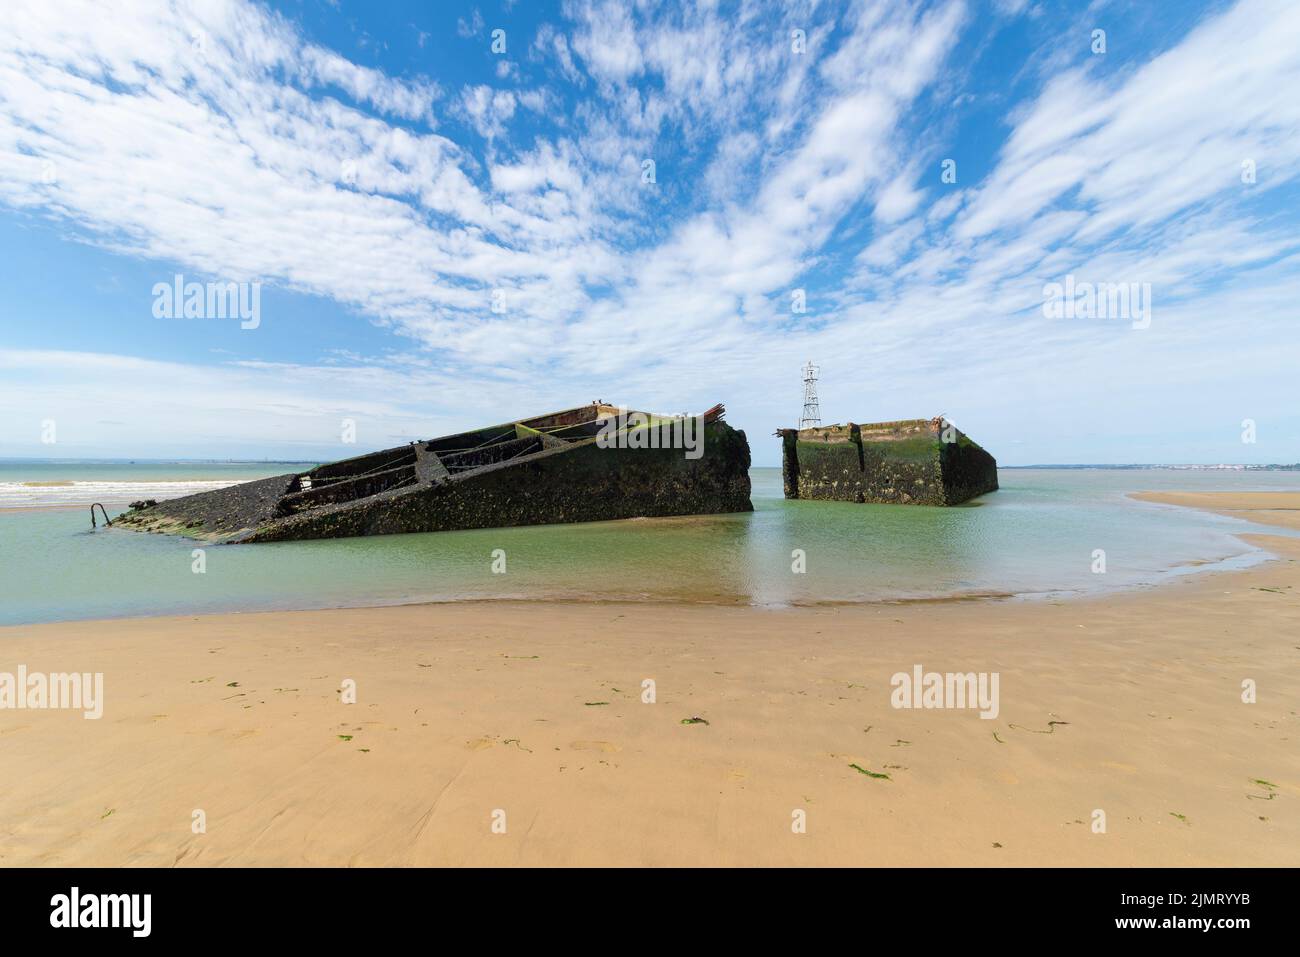 Section de jour J du port de Mulberry ou du port situé dans l'estuaire de la Tamise près de Southend on Sea, Essex. Relique historique de la Seconde Guerre mondiale sur le banc de sable Banque D'Images